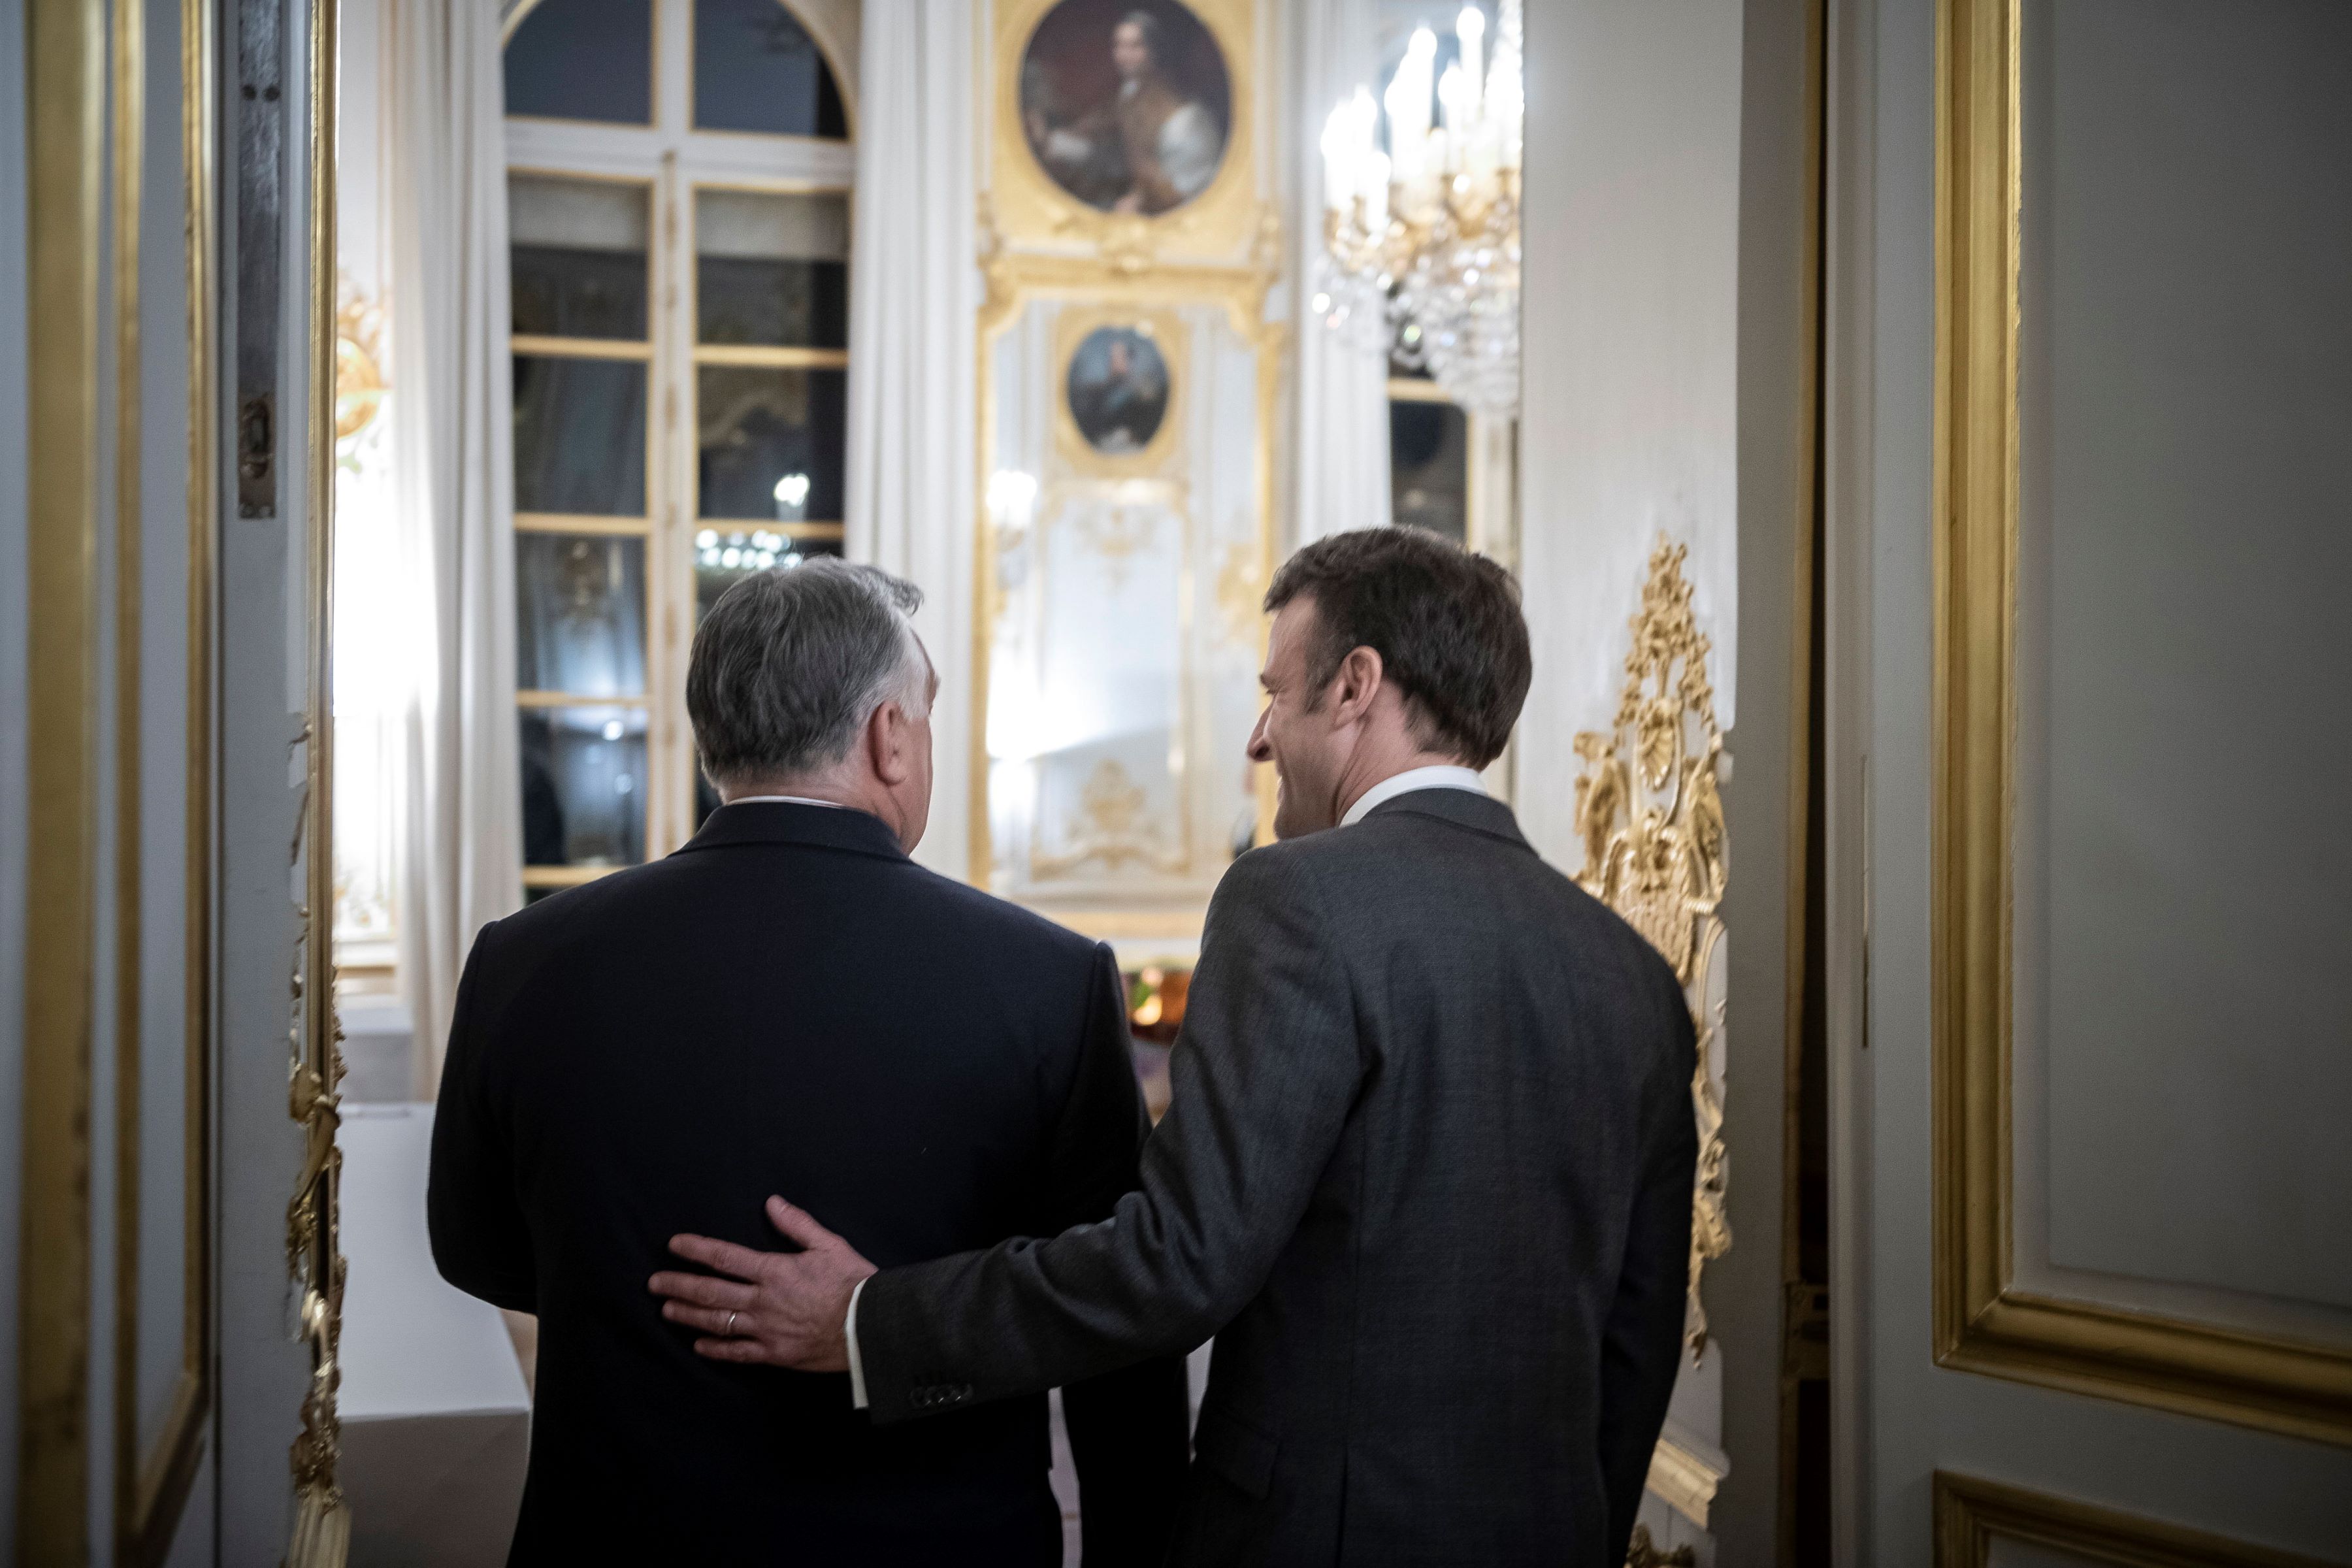 A Miniszterelnöki Sajtóiroda által közreadott képen Emmanuel Macron francia köztársasági elnök fogadja Orbán Viktor miniszterelnököt az Elysée-palotában 2023. március 13-án.